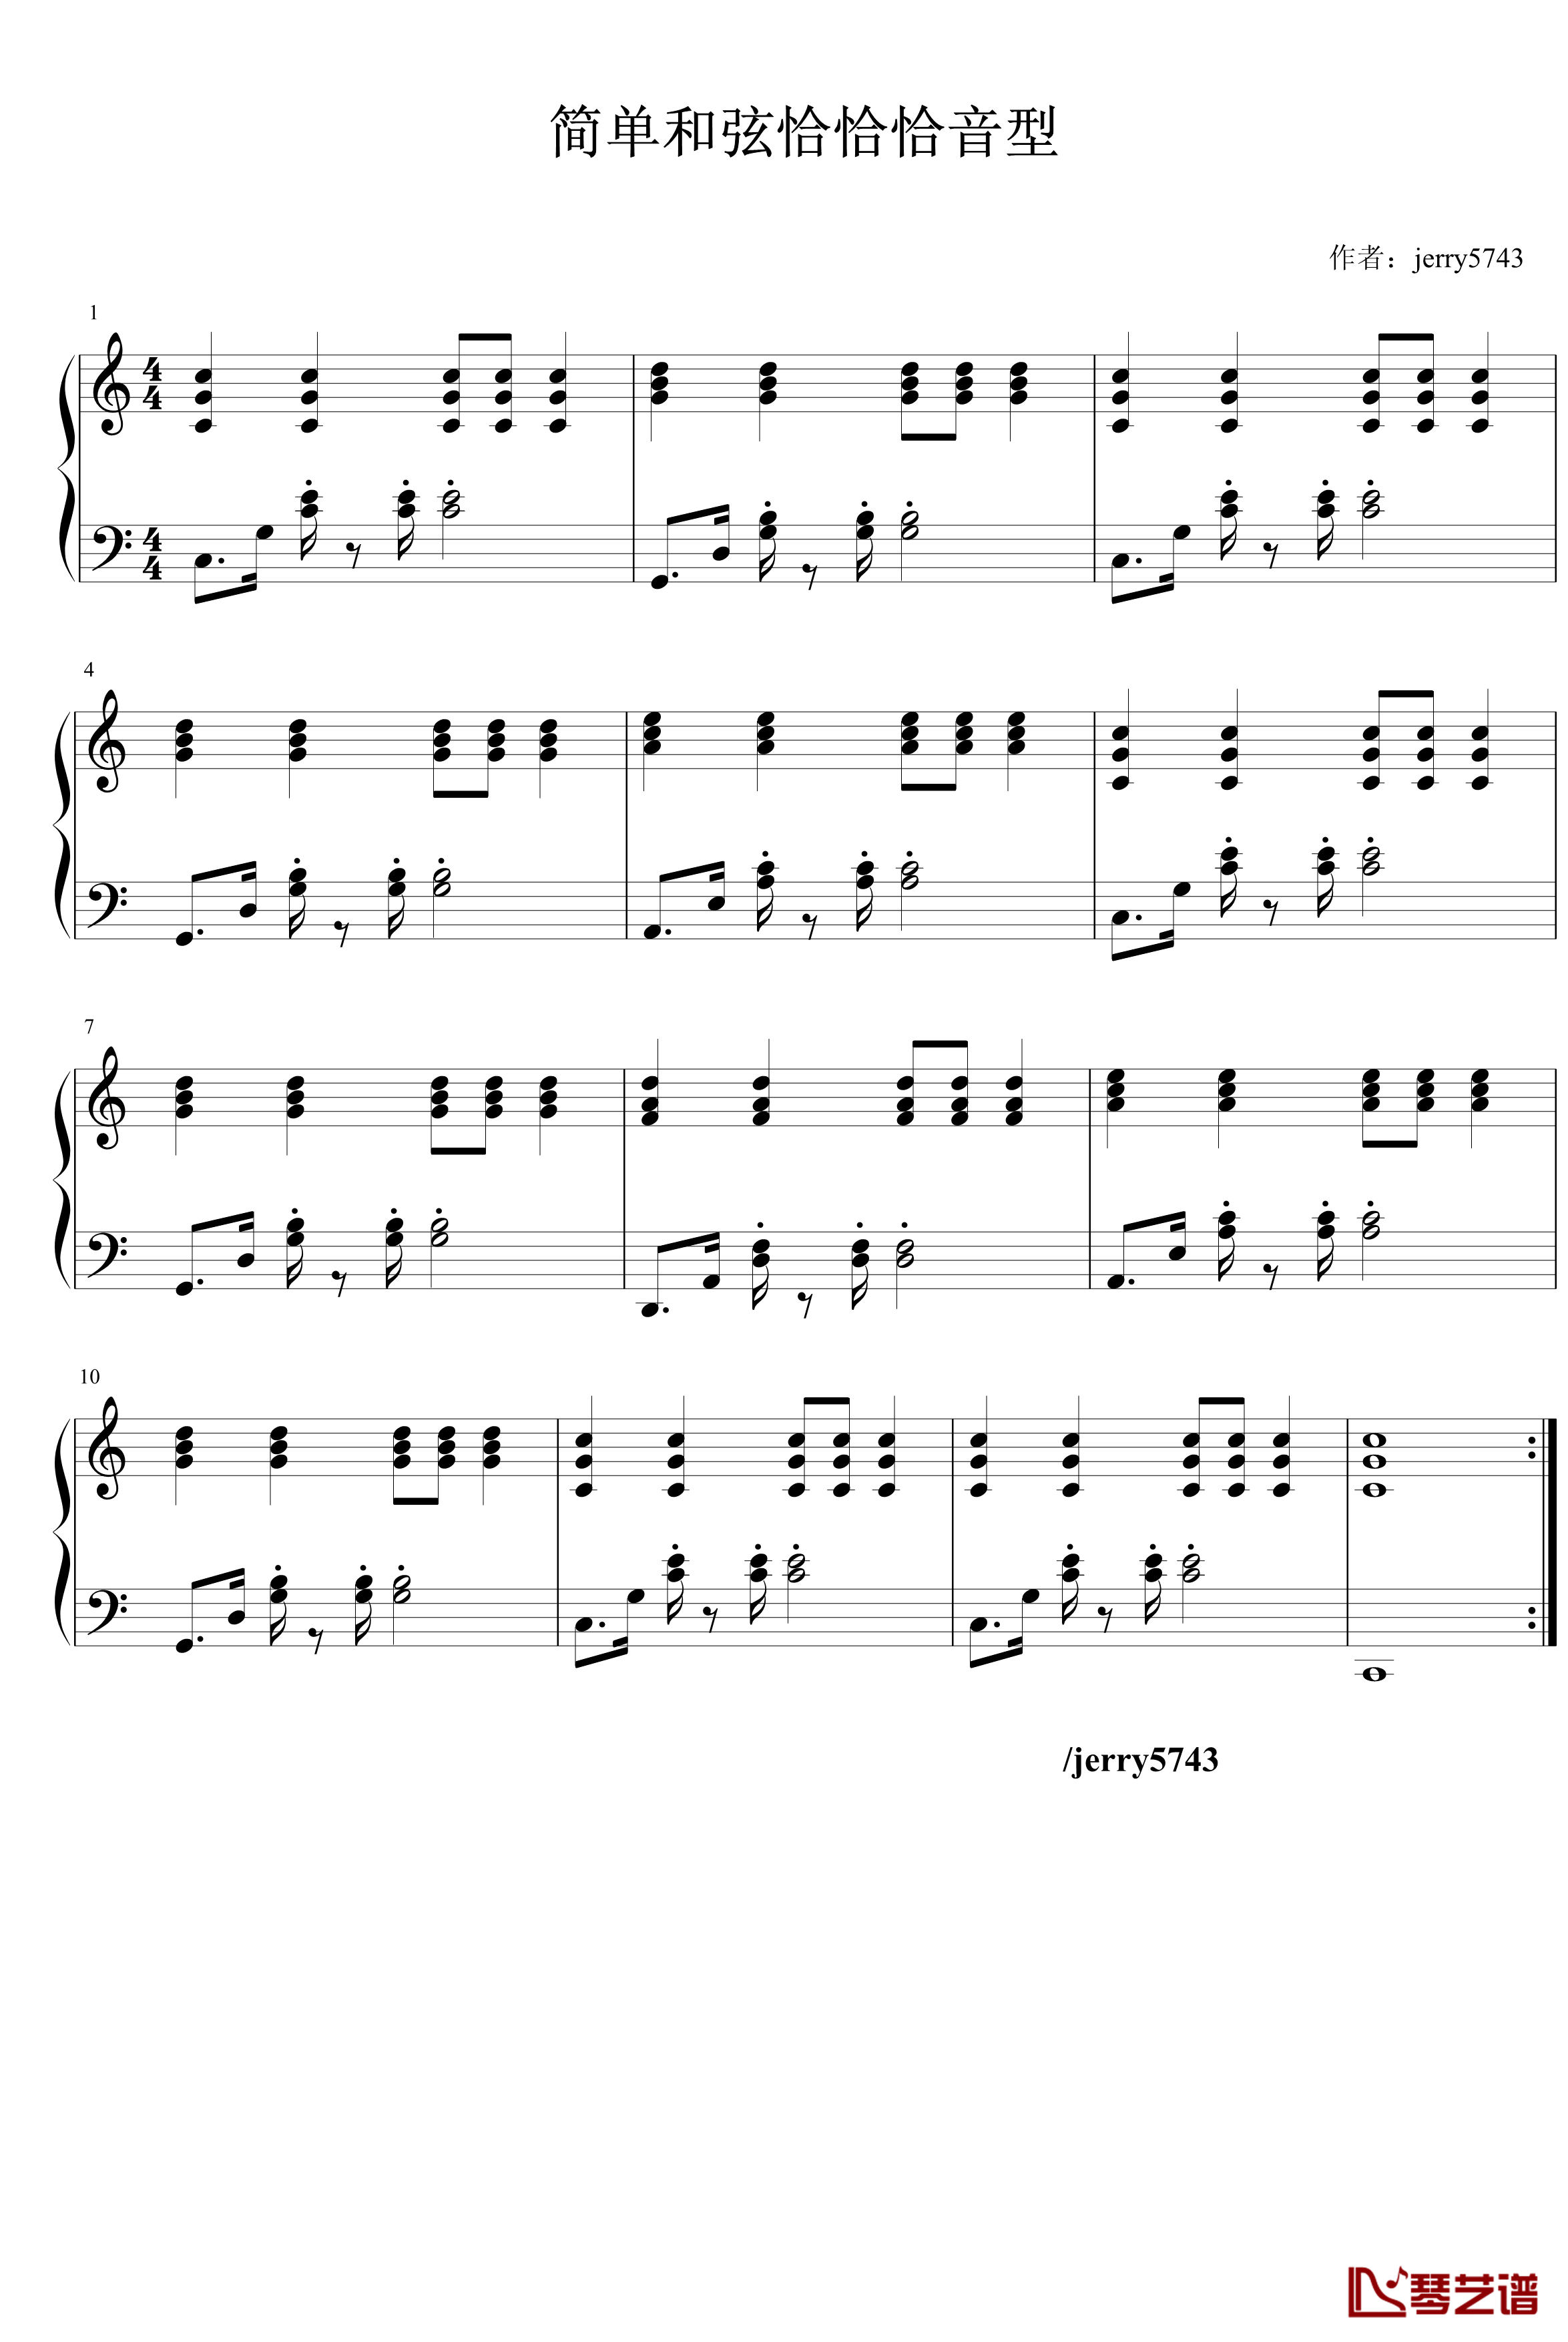 简单和弦恰恰恰音型钢琴谱-jerry57431